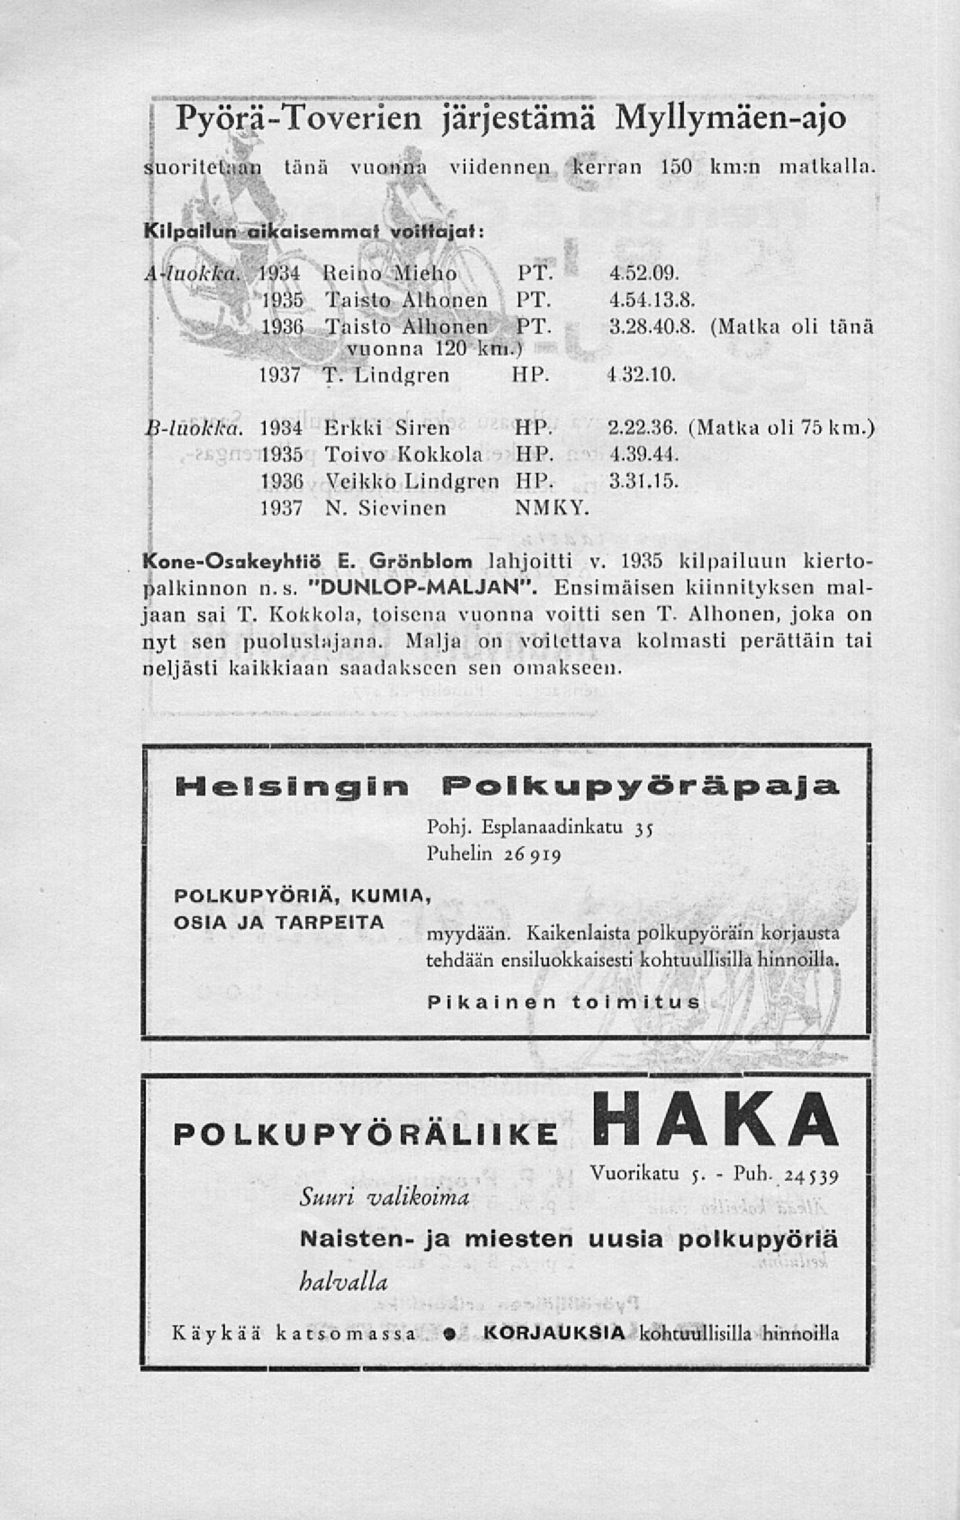 : 1936 Veikko Lindgren HP. 3.31.15. : 1937 N. Sievinen NMKY. kone-osakeyhtiö E. Grönblom lahjoitti v. 1935 kilpailuun kiertopalkinnon n. s. "DUNLOP-MALJAN". Ensimäisen kiinnityksen maljaan sai T.